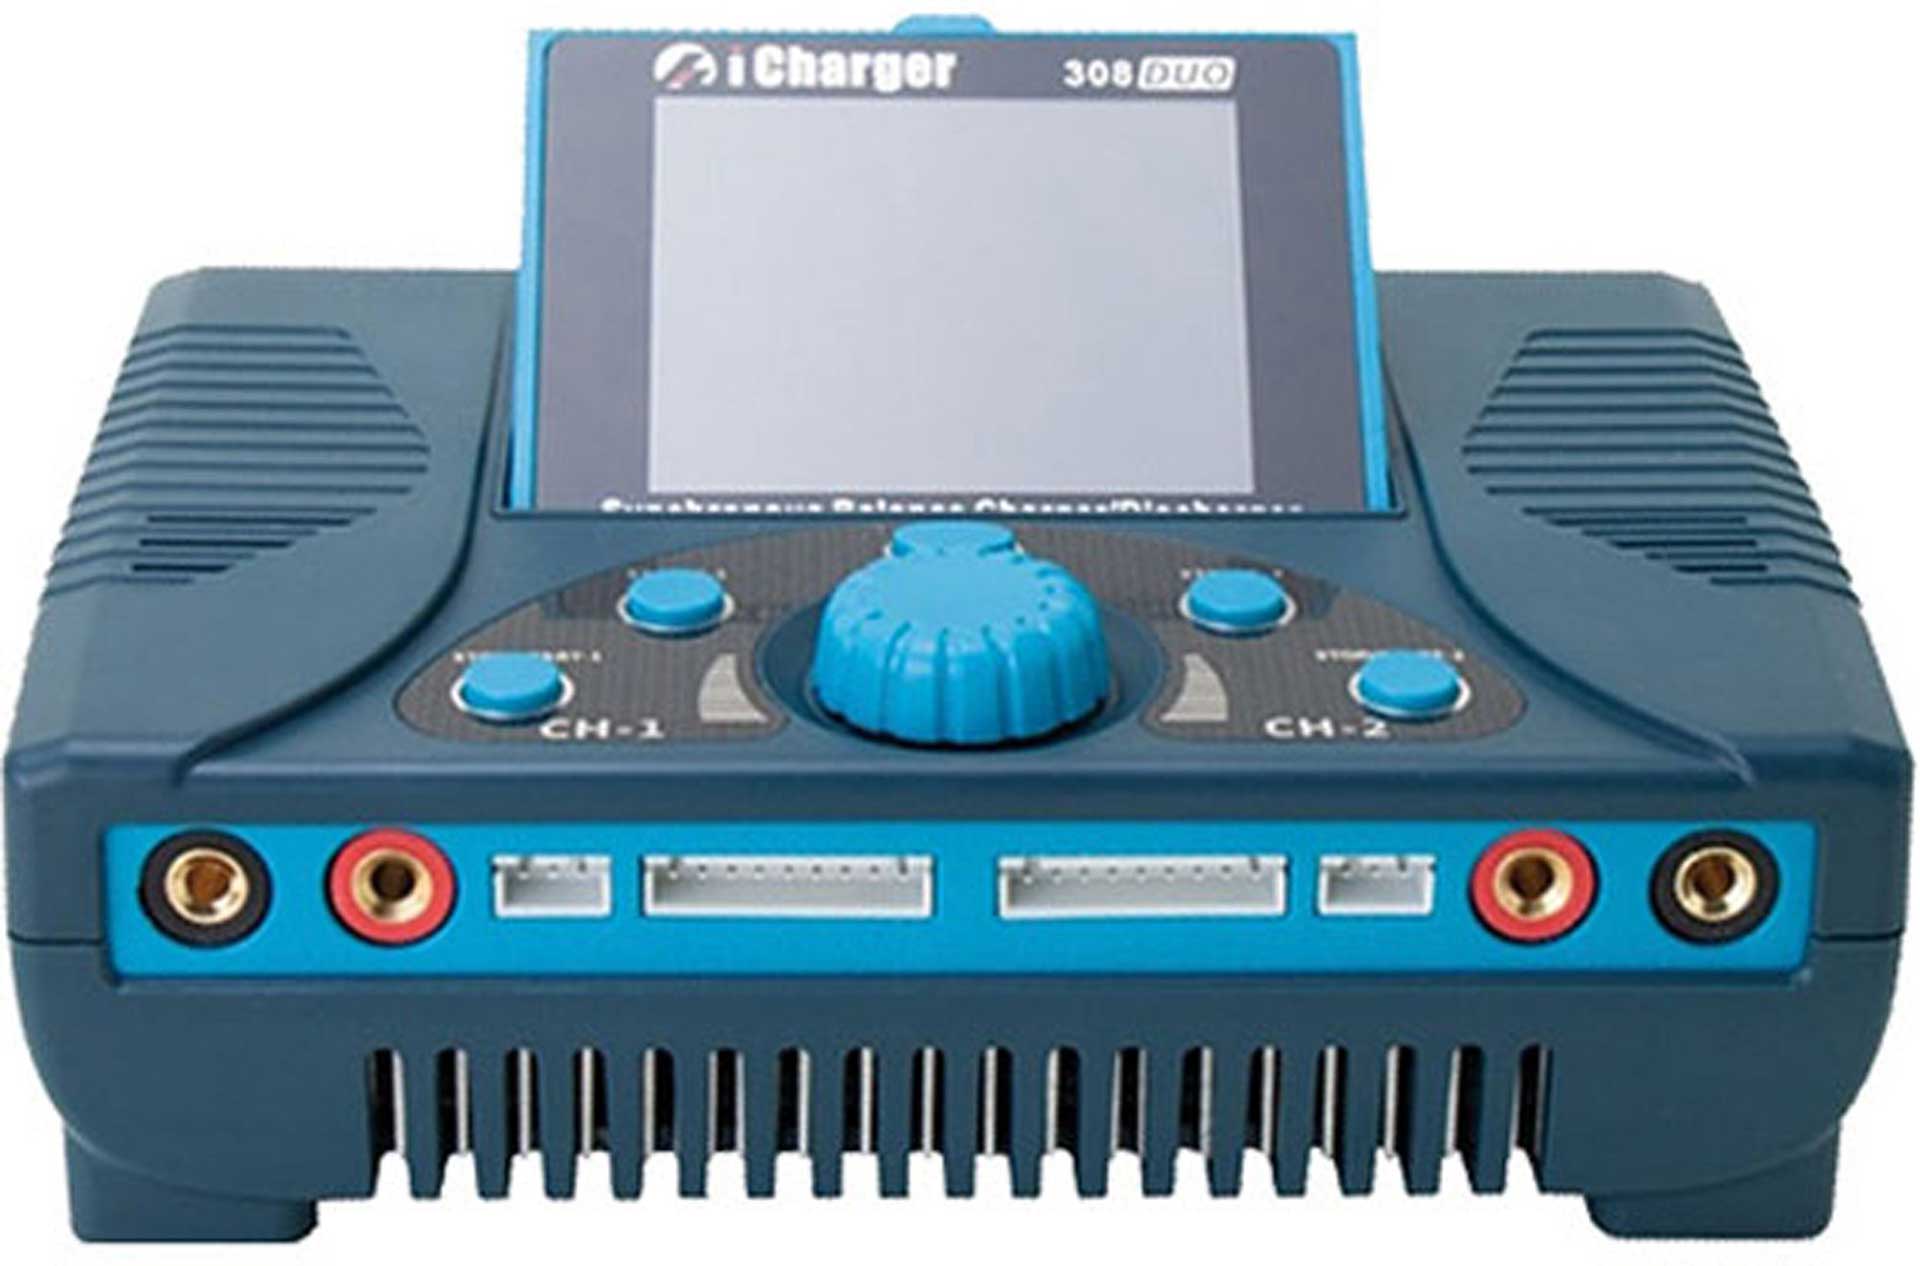 JUN-SI ICHARGER 308 DUO 1300W/50A (800A/30A) M-SD CARD PORT, USB,....